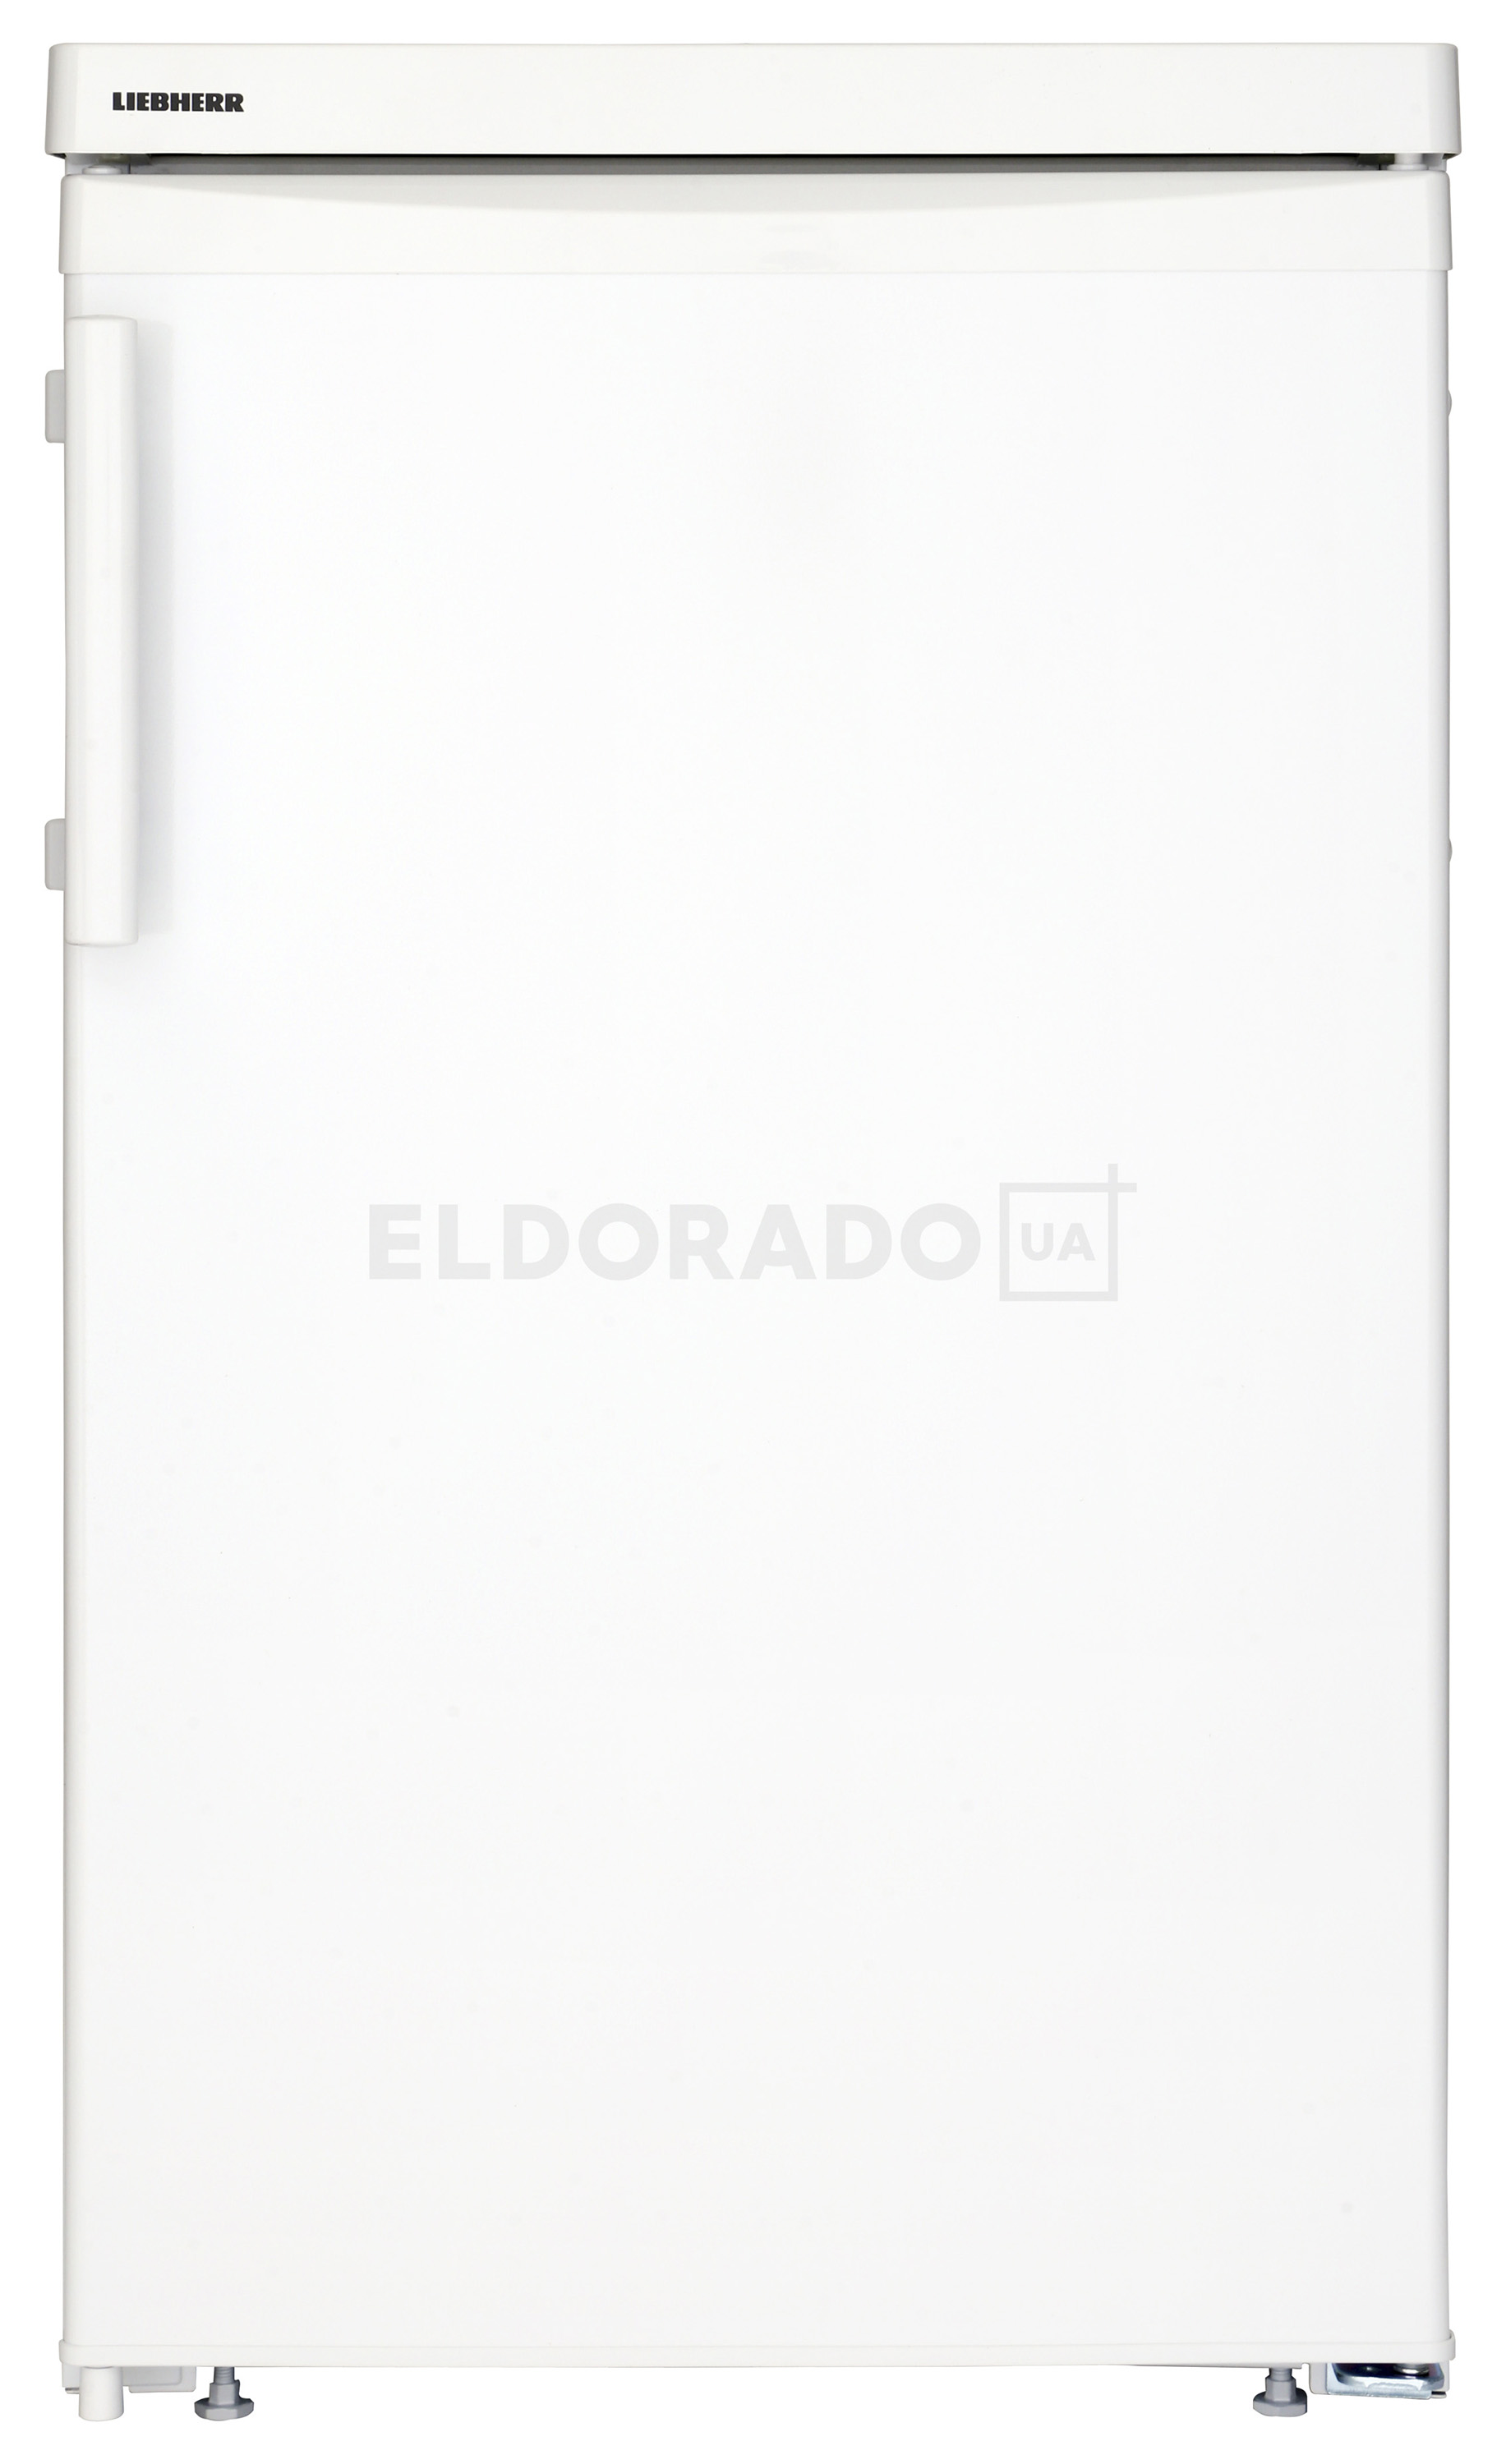 Акция на Холодильник LIEBHERR T 1414 от Eldorado